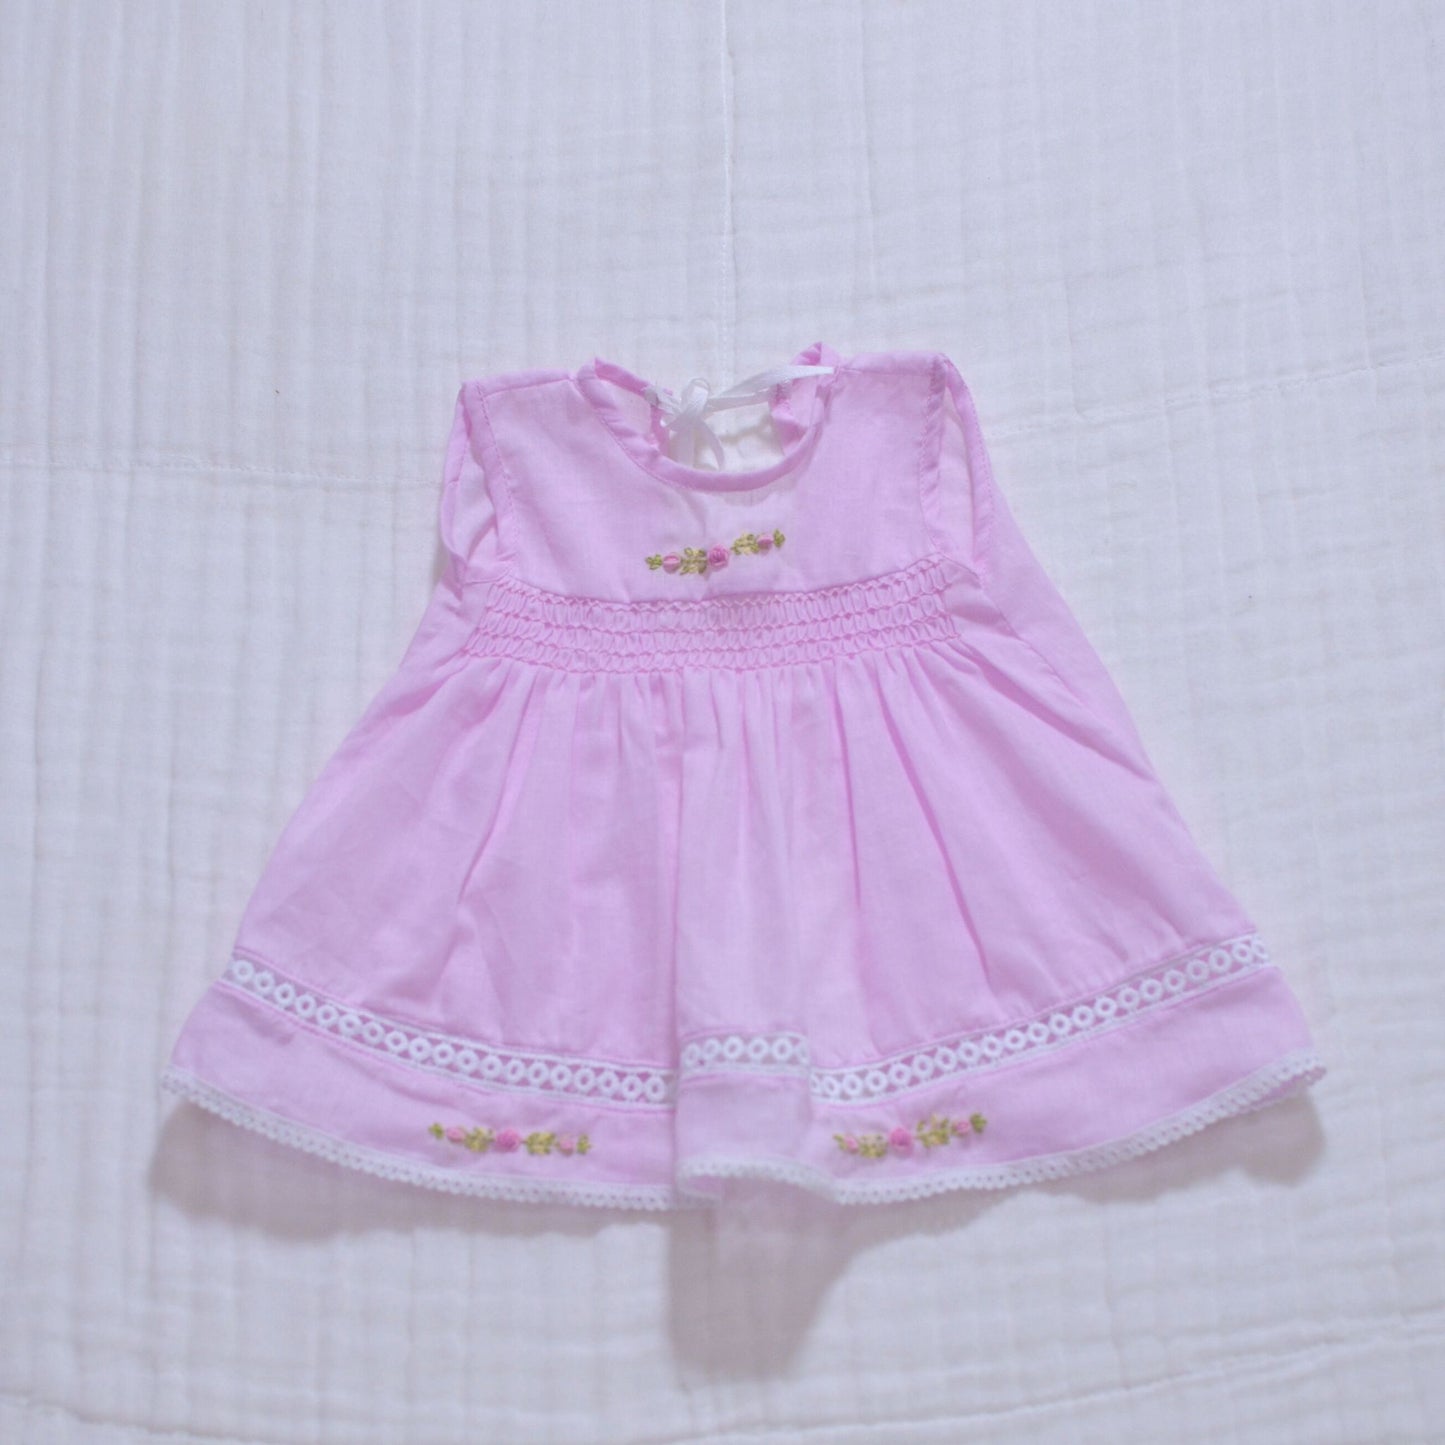 Handmade Smocked Newborn Dress Pink,Yellow - 0 to 3 month